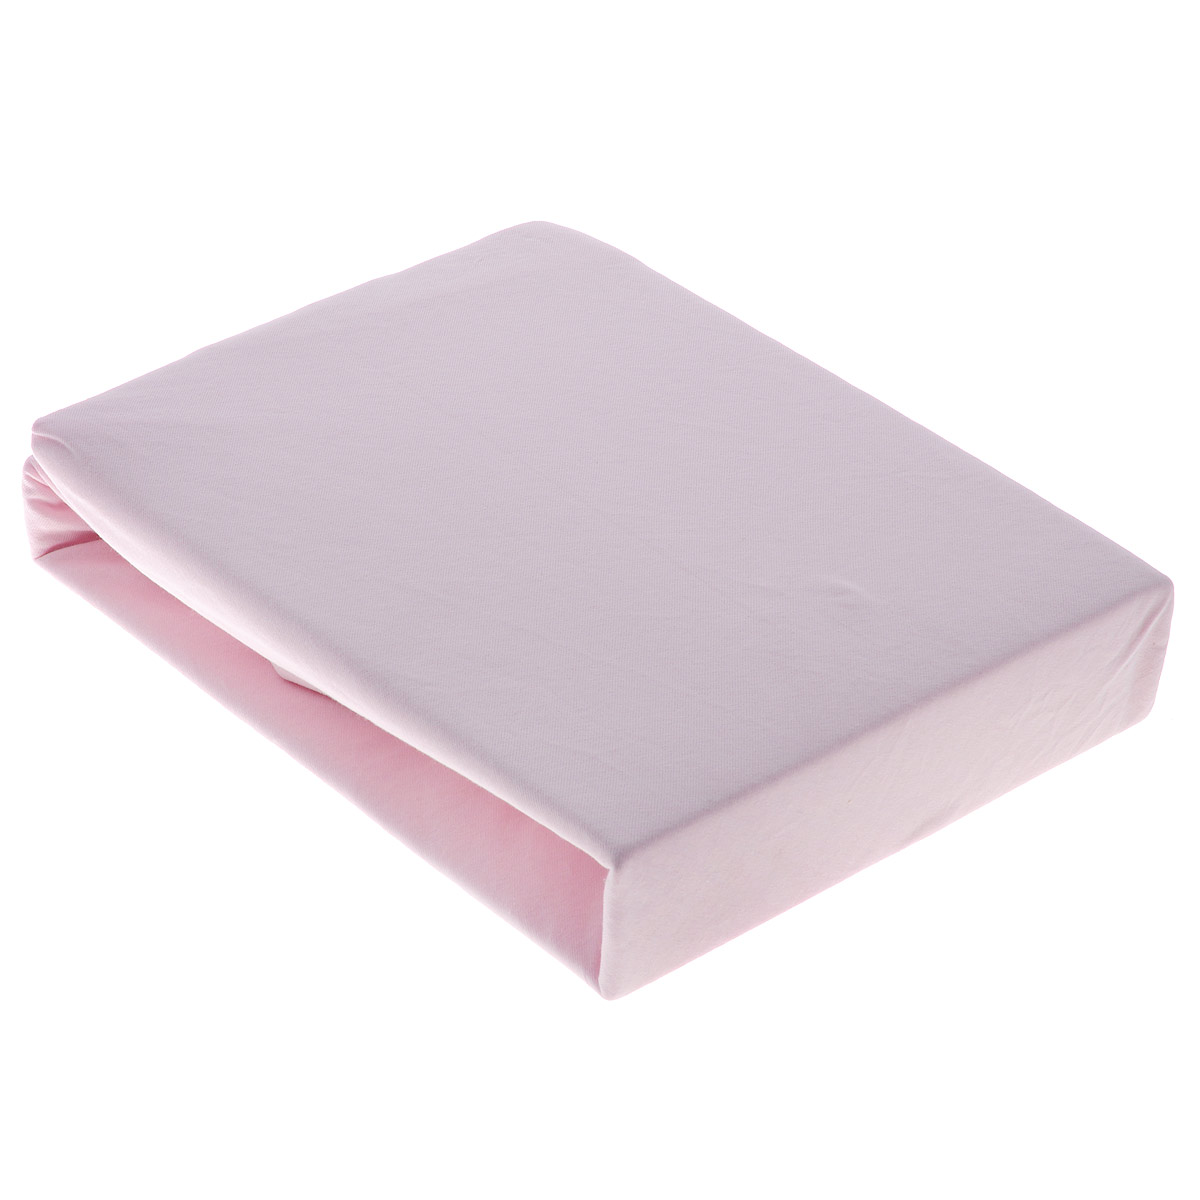 фото Простыня OL-Tex "Джерси", на резинке, цвет: бледно-розовый, 160 х 200 х 20 см